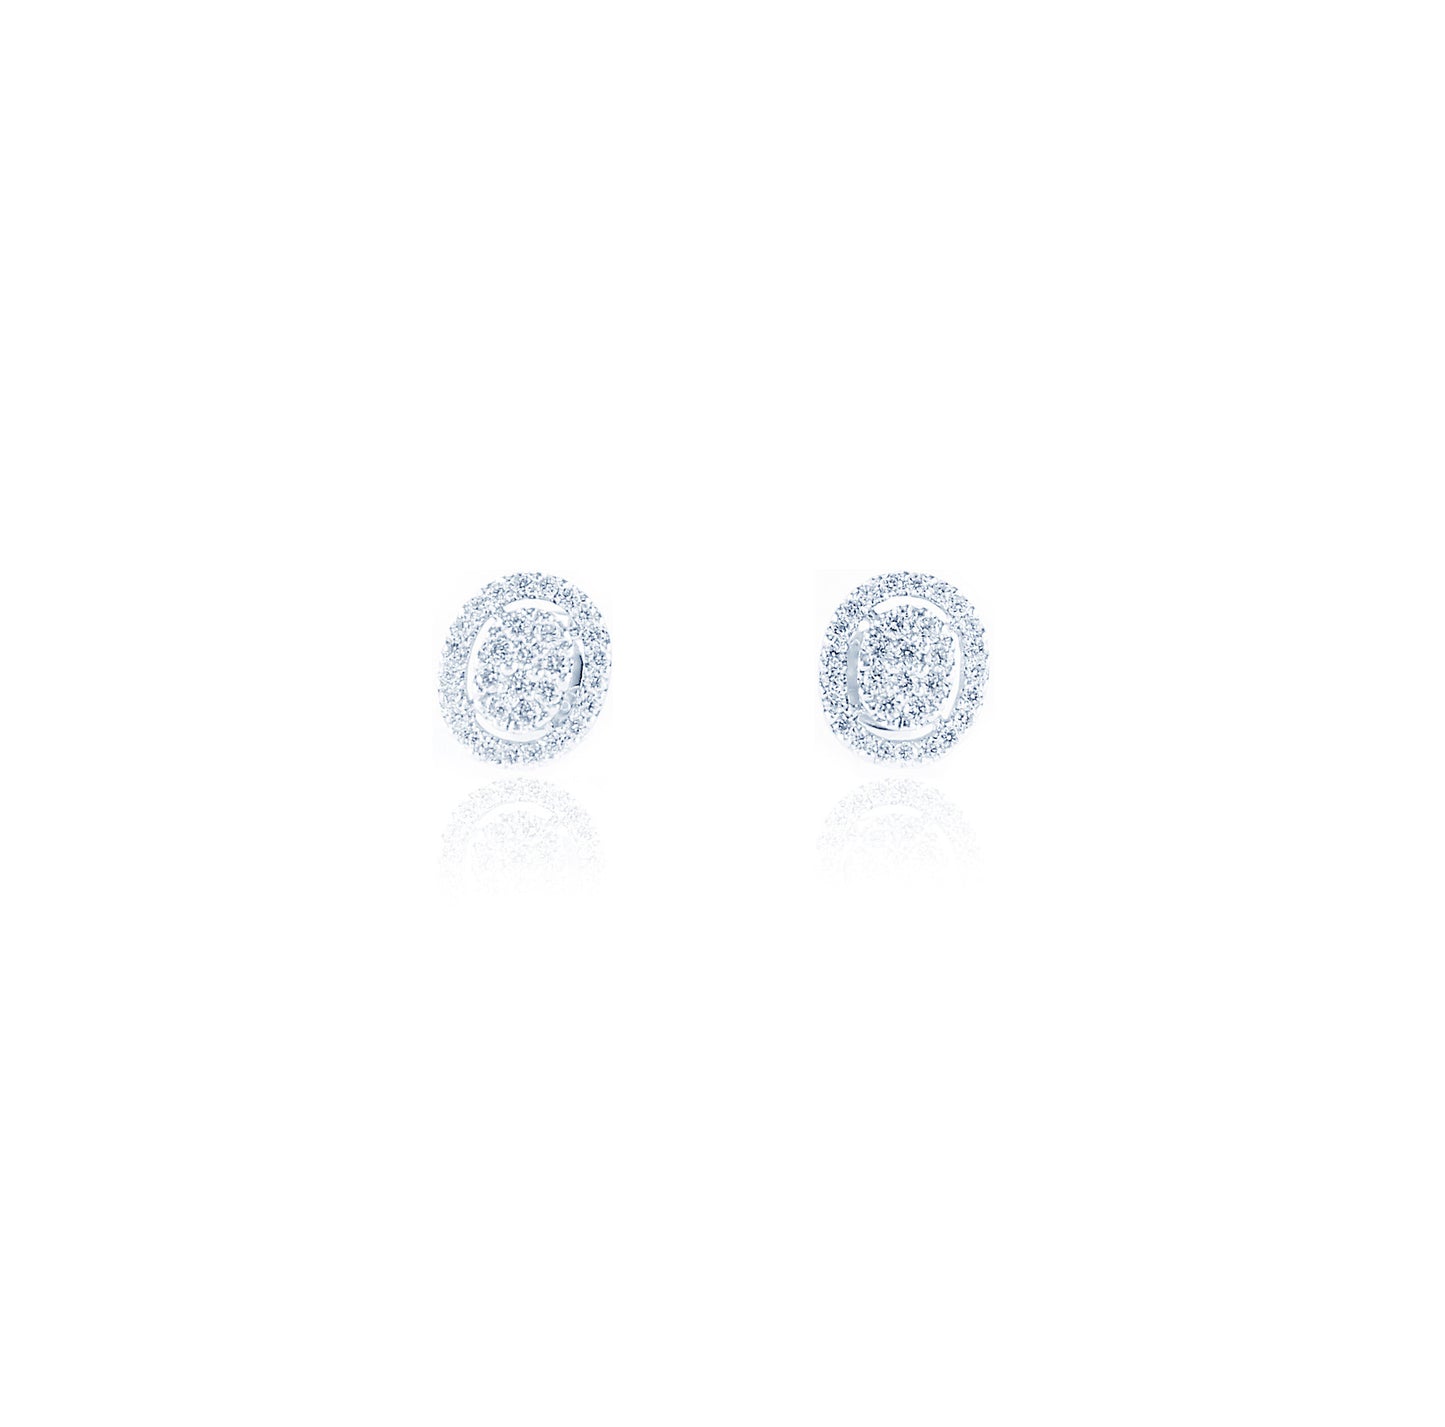 Elegant Oval shaped Diamond Earrings in 18K White Gold